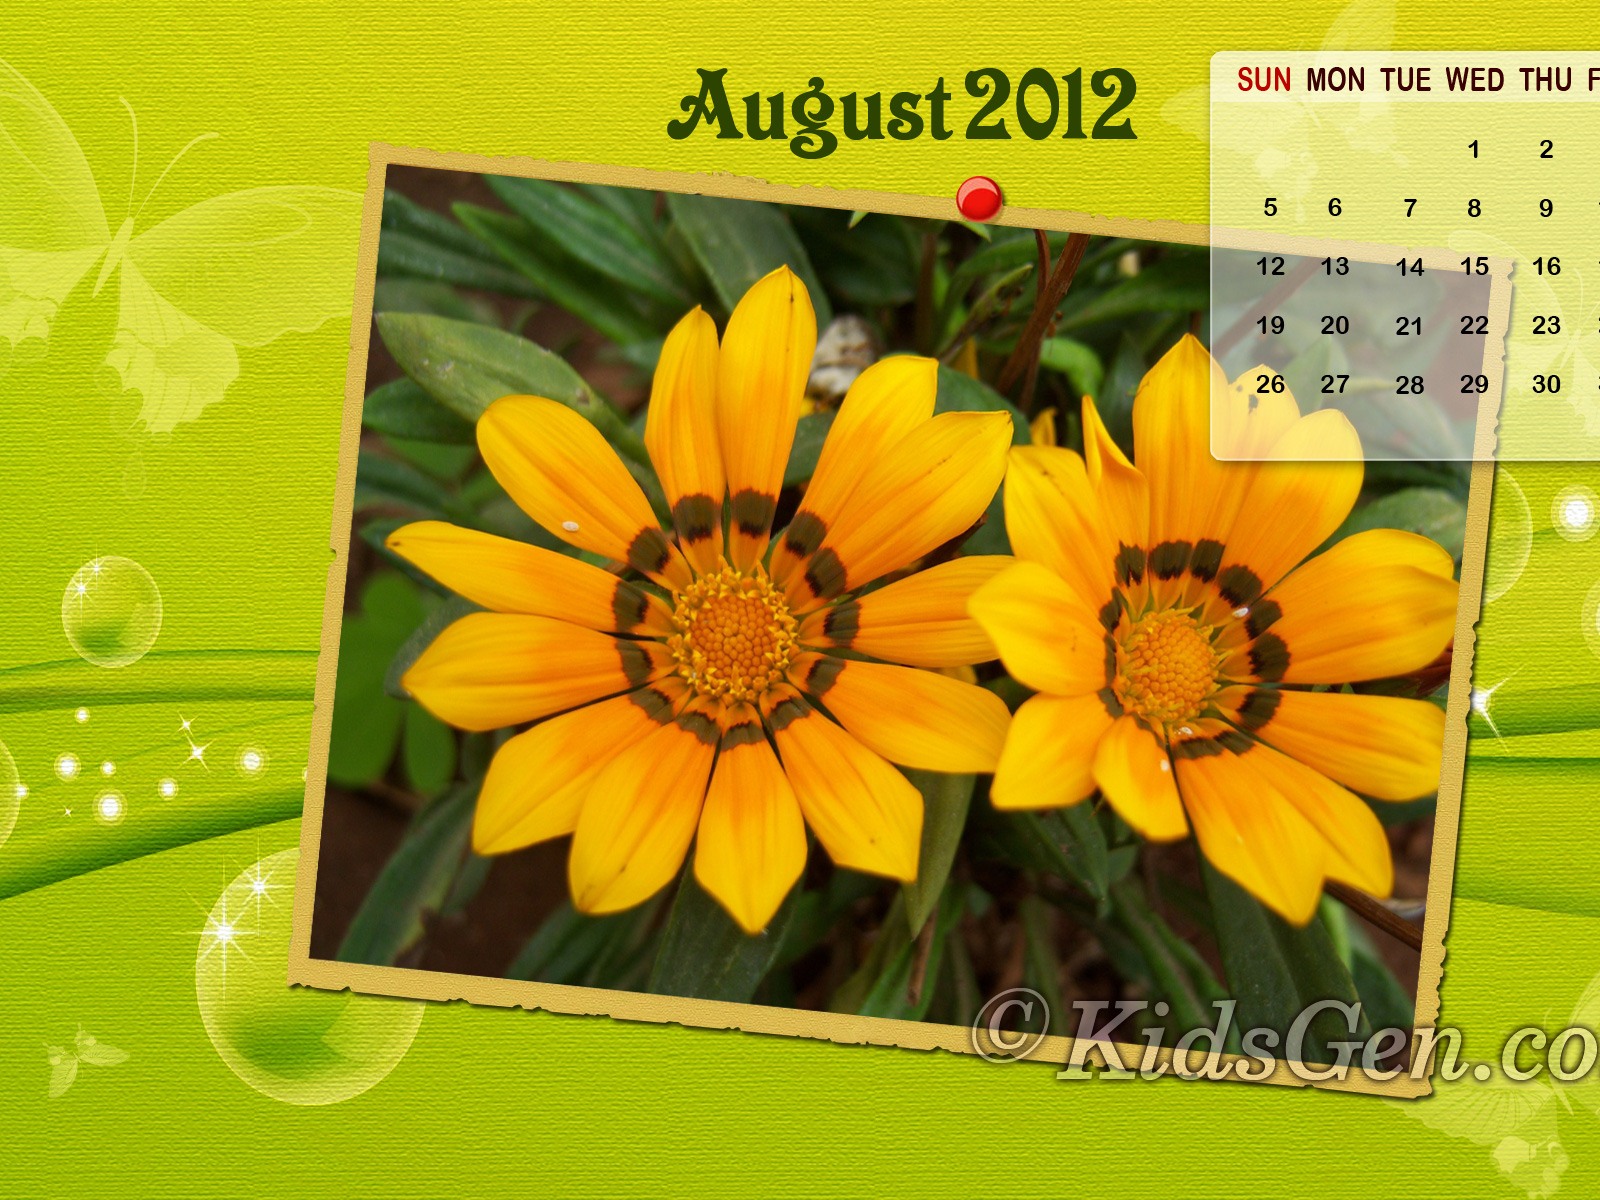 August 2012 Calendar wallpapers (2) #13 - 1600x1200